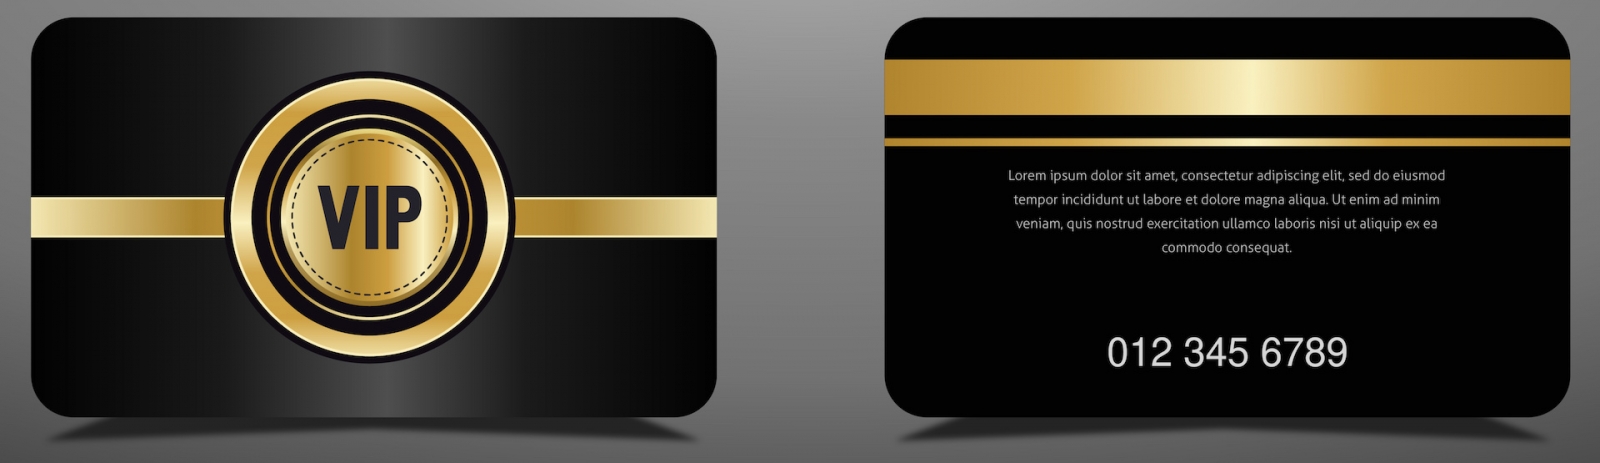 carte vip dorée de luxe et fond noir élégant, design de luxe pour les membres vip.